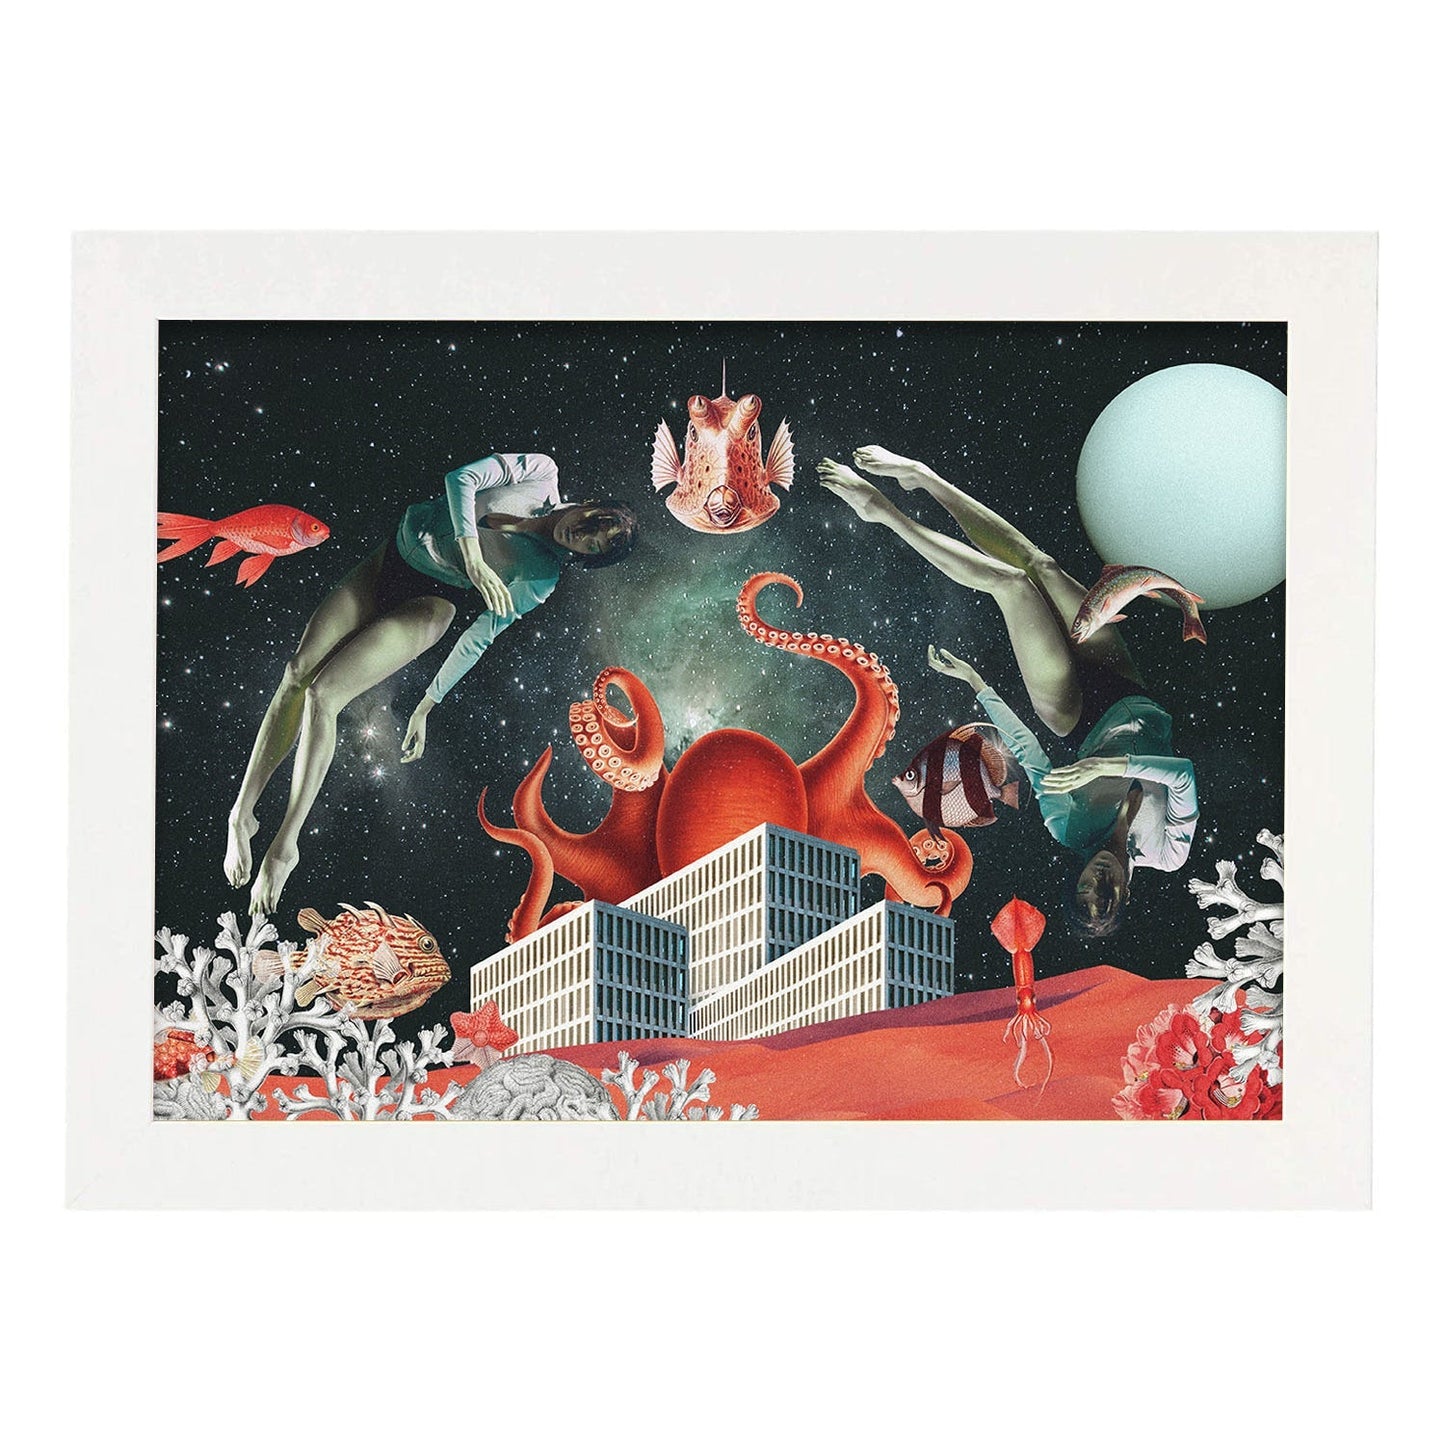 Lamina artistica decorativa con ilustración de Sea Space estilo Collage-Artwork-Nacnic-A3-Marco Blanco-Nacnic Estudio SL